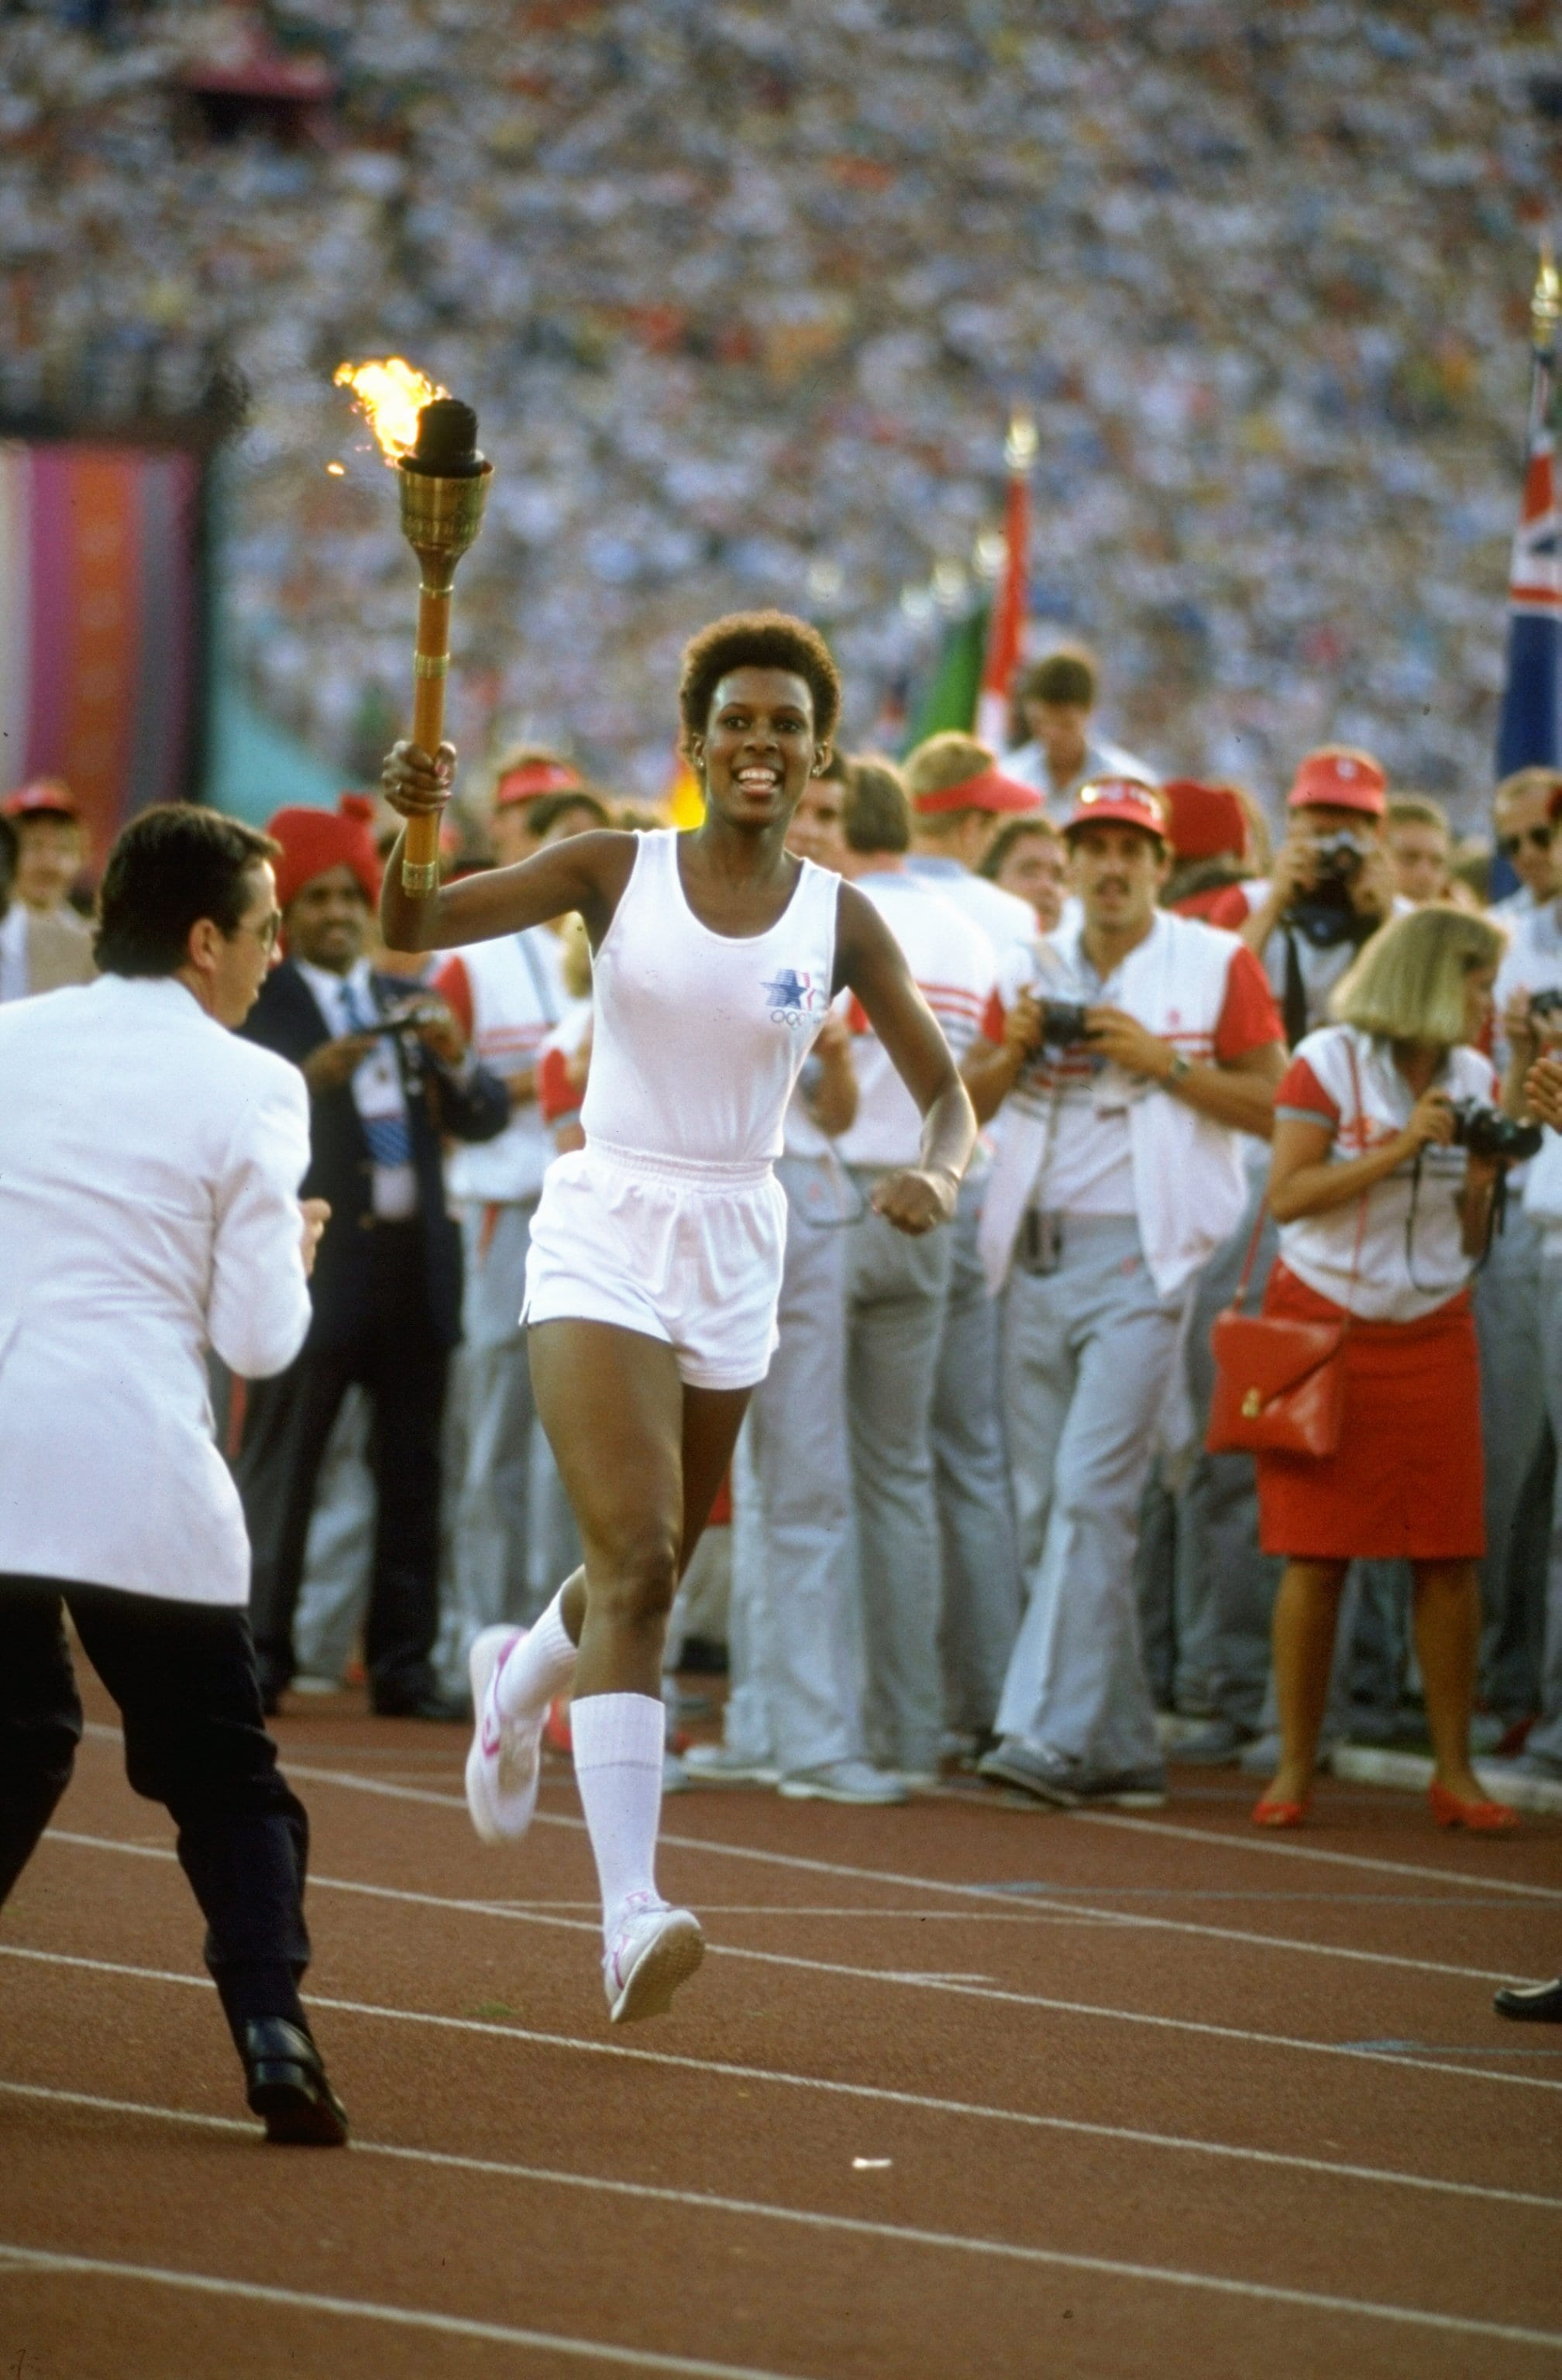 Gina Hemphill, la nipote dell'atleta americana di atletica leggera e quattro volte medaglia d'oro ai Giochi Olimpici del 1936 Jesse Owens corre attraverso lo stadio portando la torcia olimpica durante la cerimonia di apertura dei XXIII Giochi Olimpici Estivi 